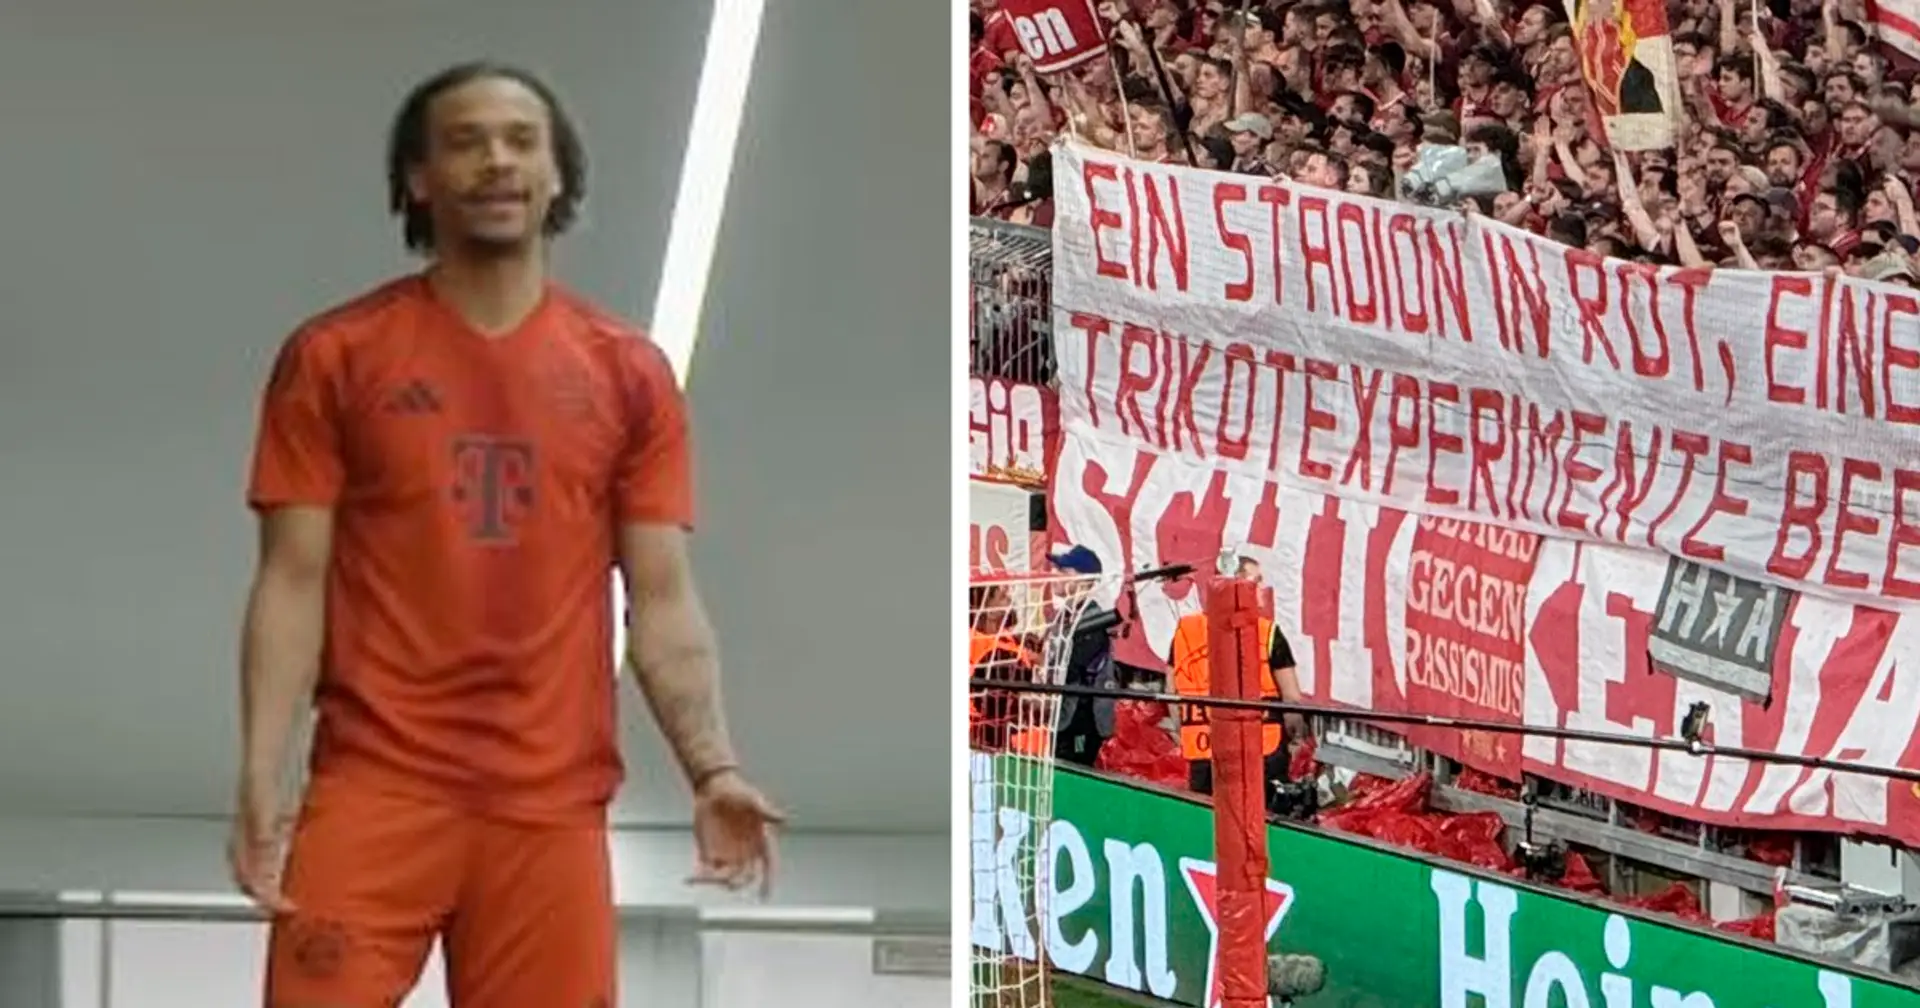 Bayern-Fans richten auf der Tribüne eine direkte Botschaft an die Vereinsbosse: "Trikotexperimente beenden!"